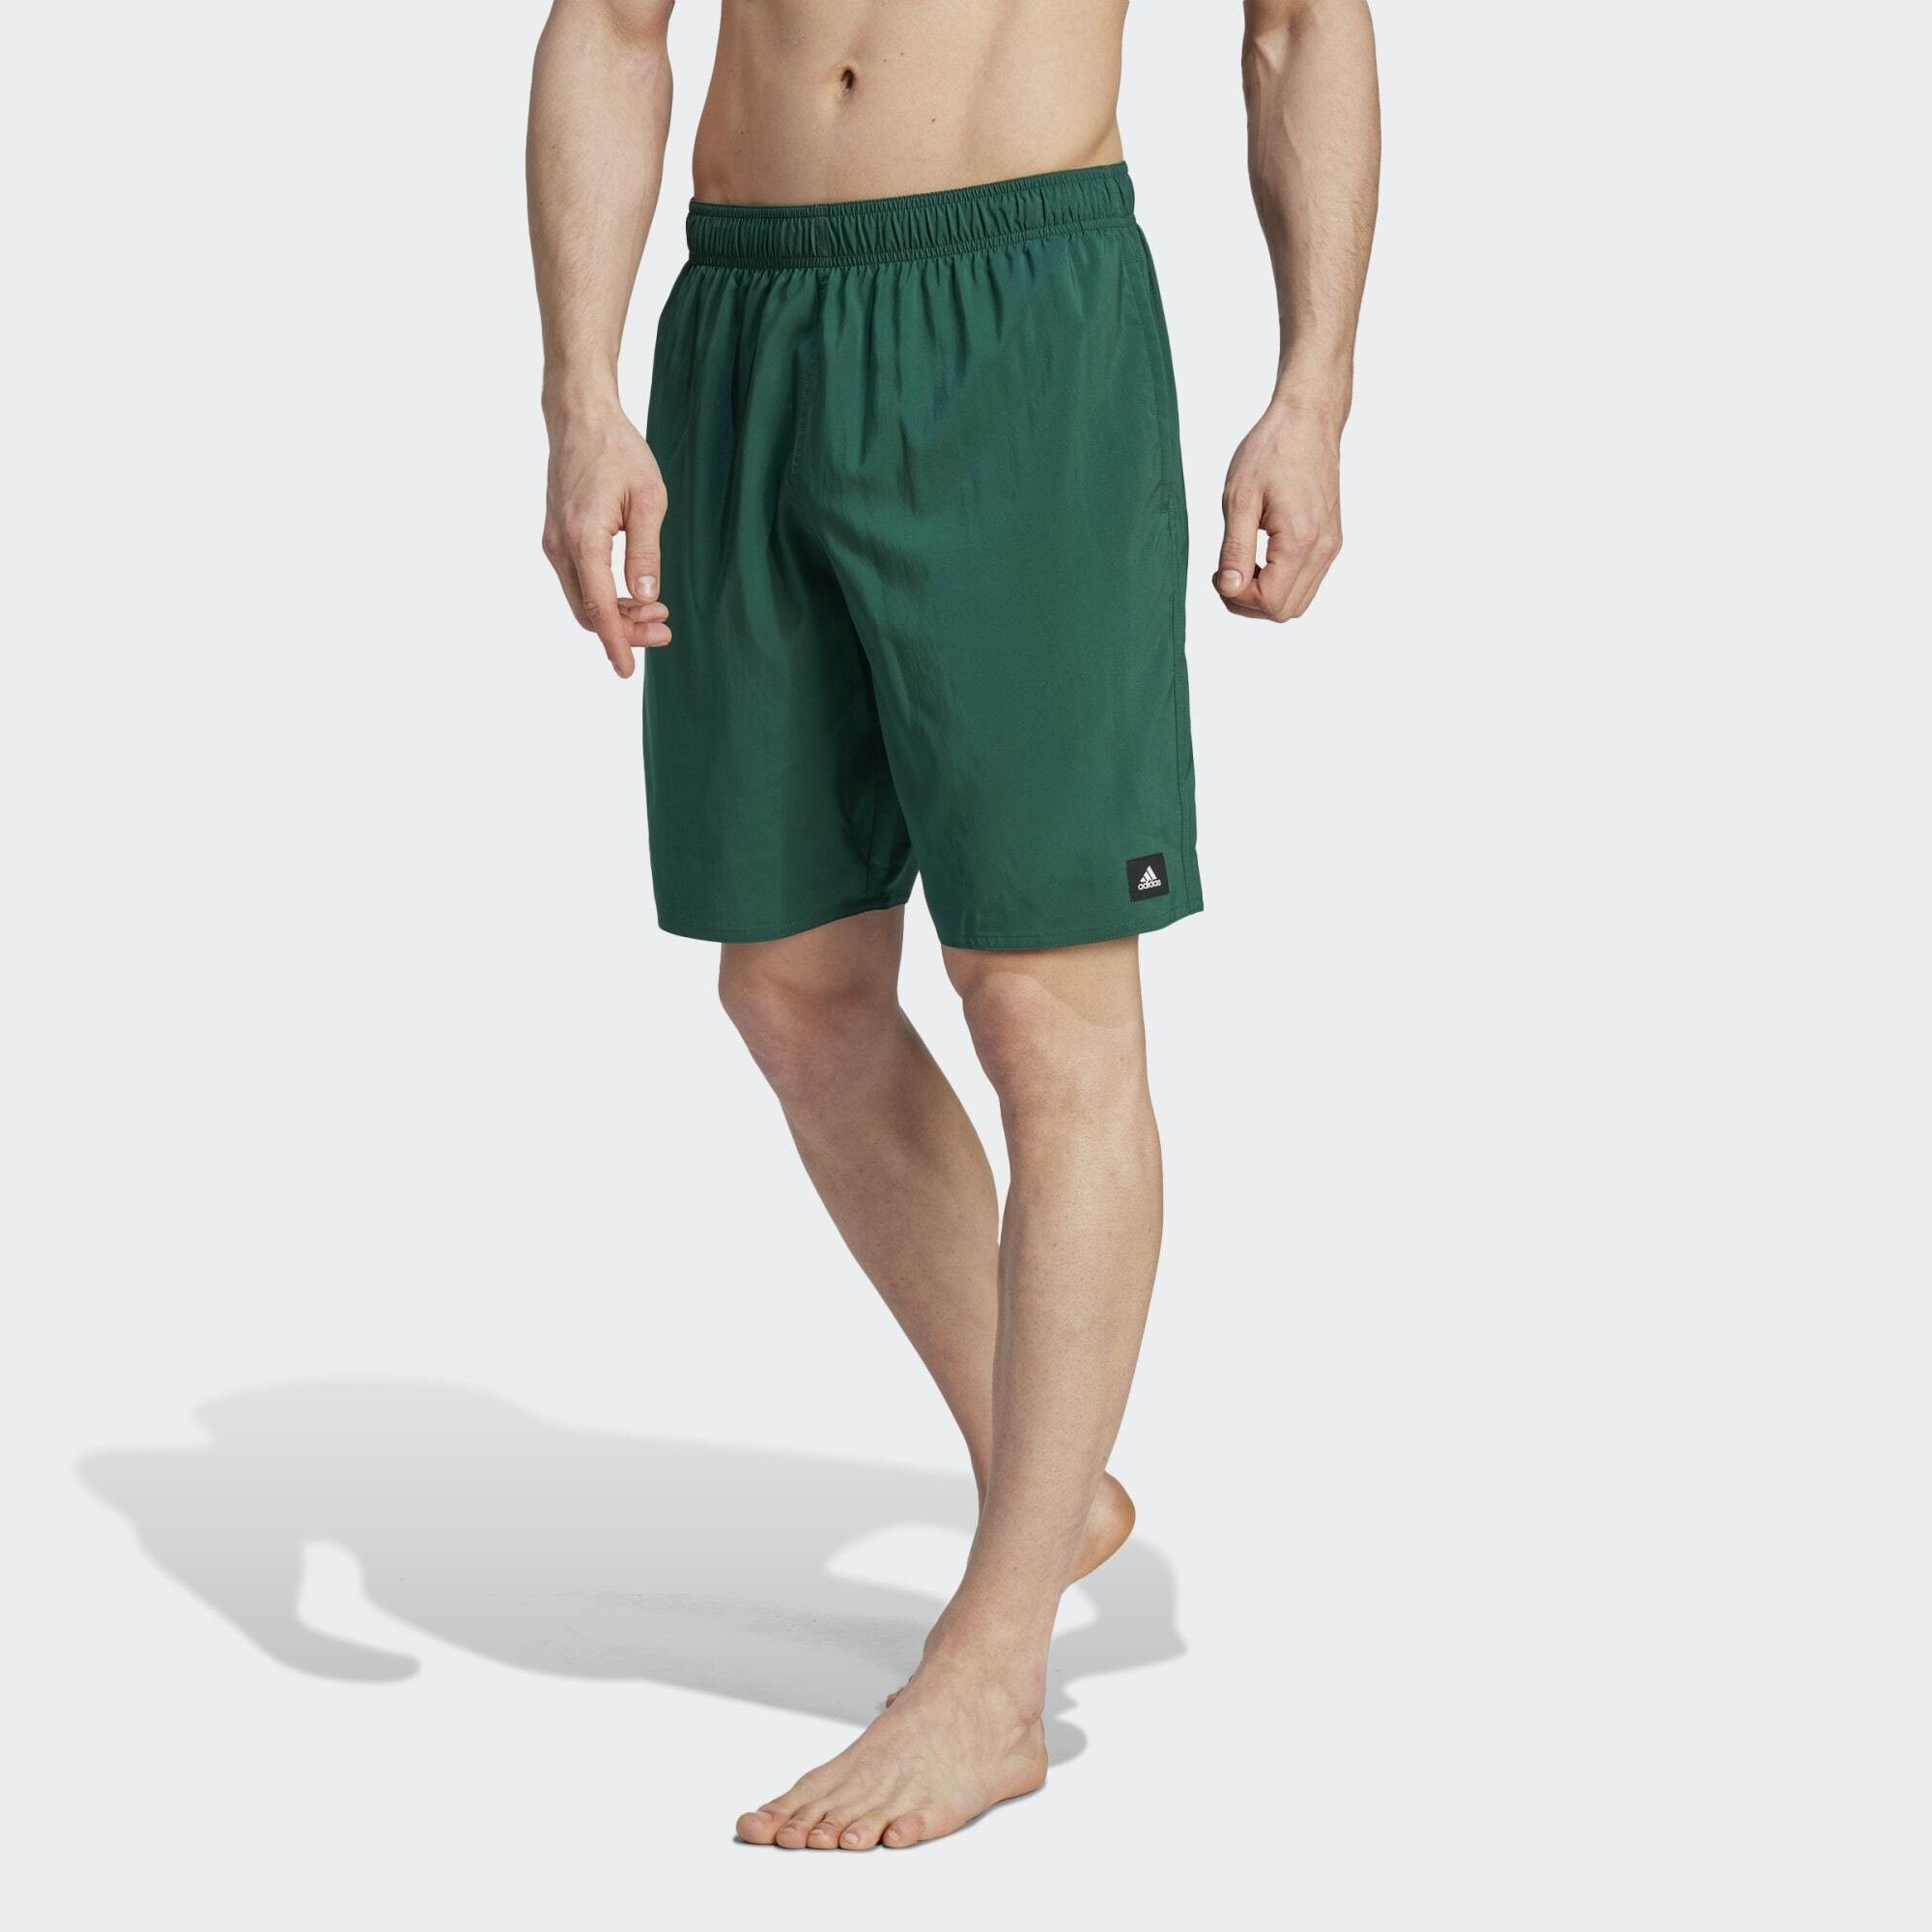 Grüne adidas Badeshorts für Herren online kaufen | OTTO